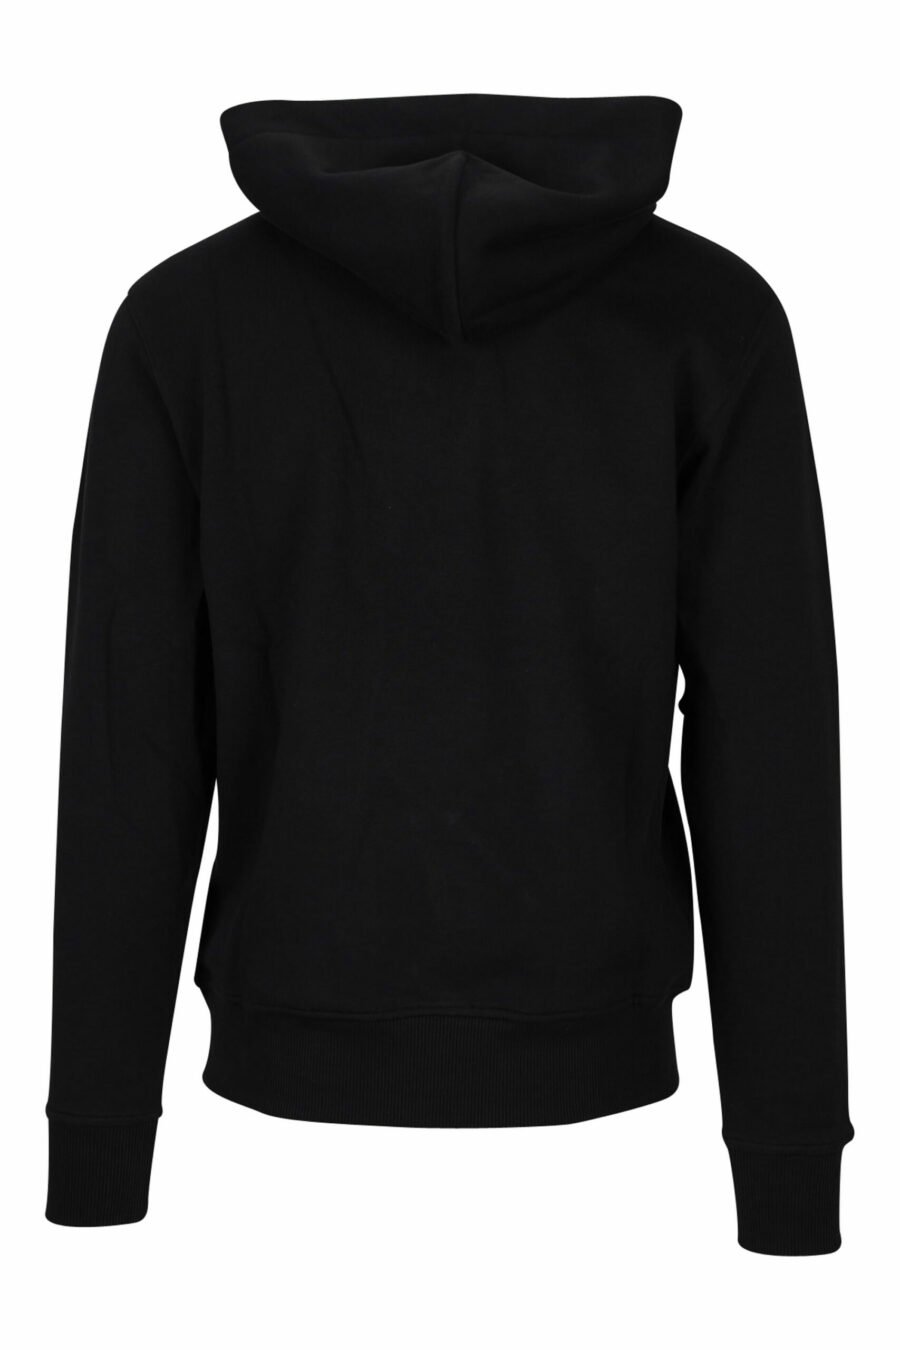 Schwarzes Kapuzensweatshirt mit barockem Rundhalsausschnitt - 8052019457933 1 skaliert